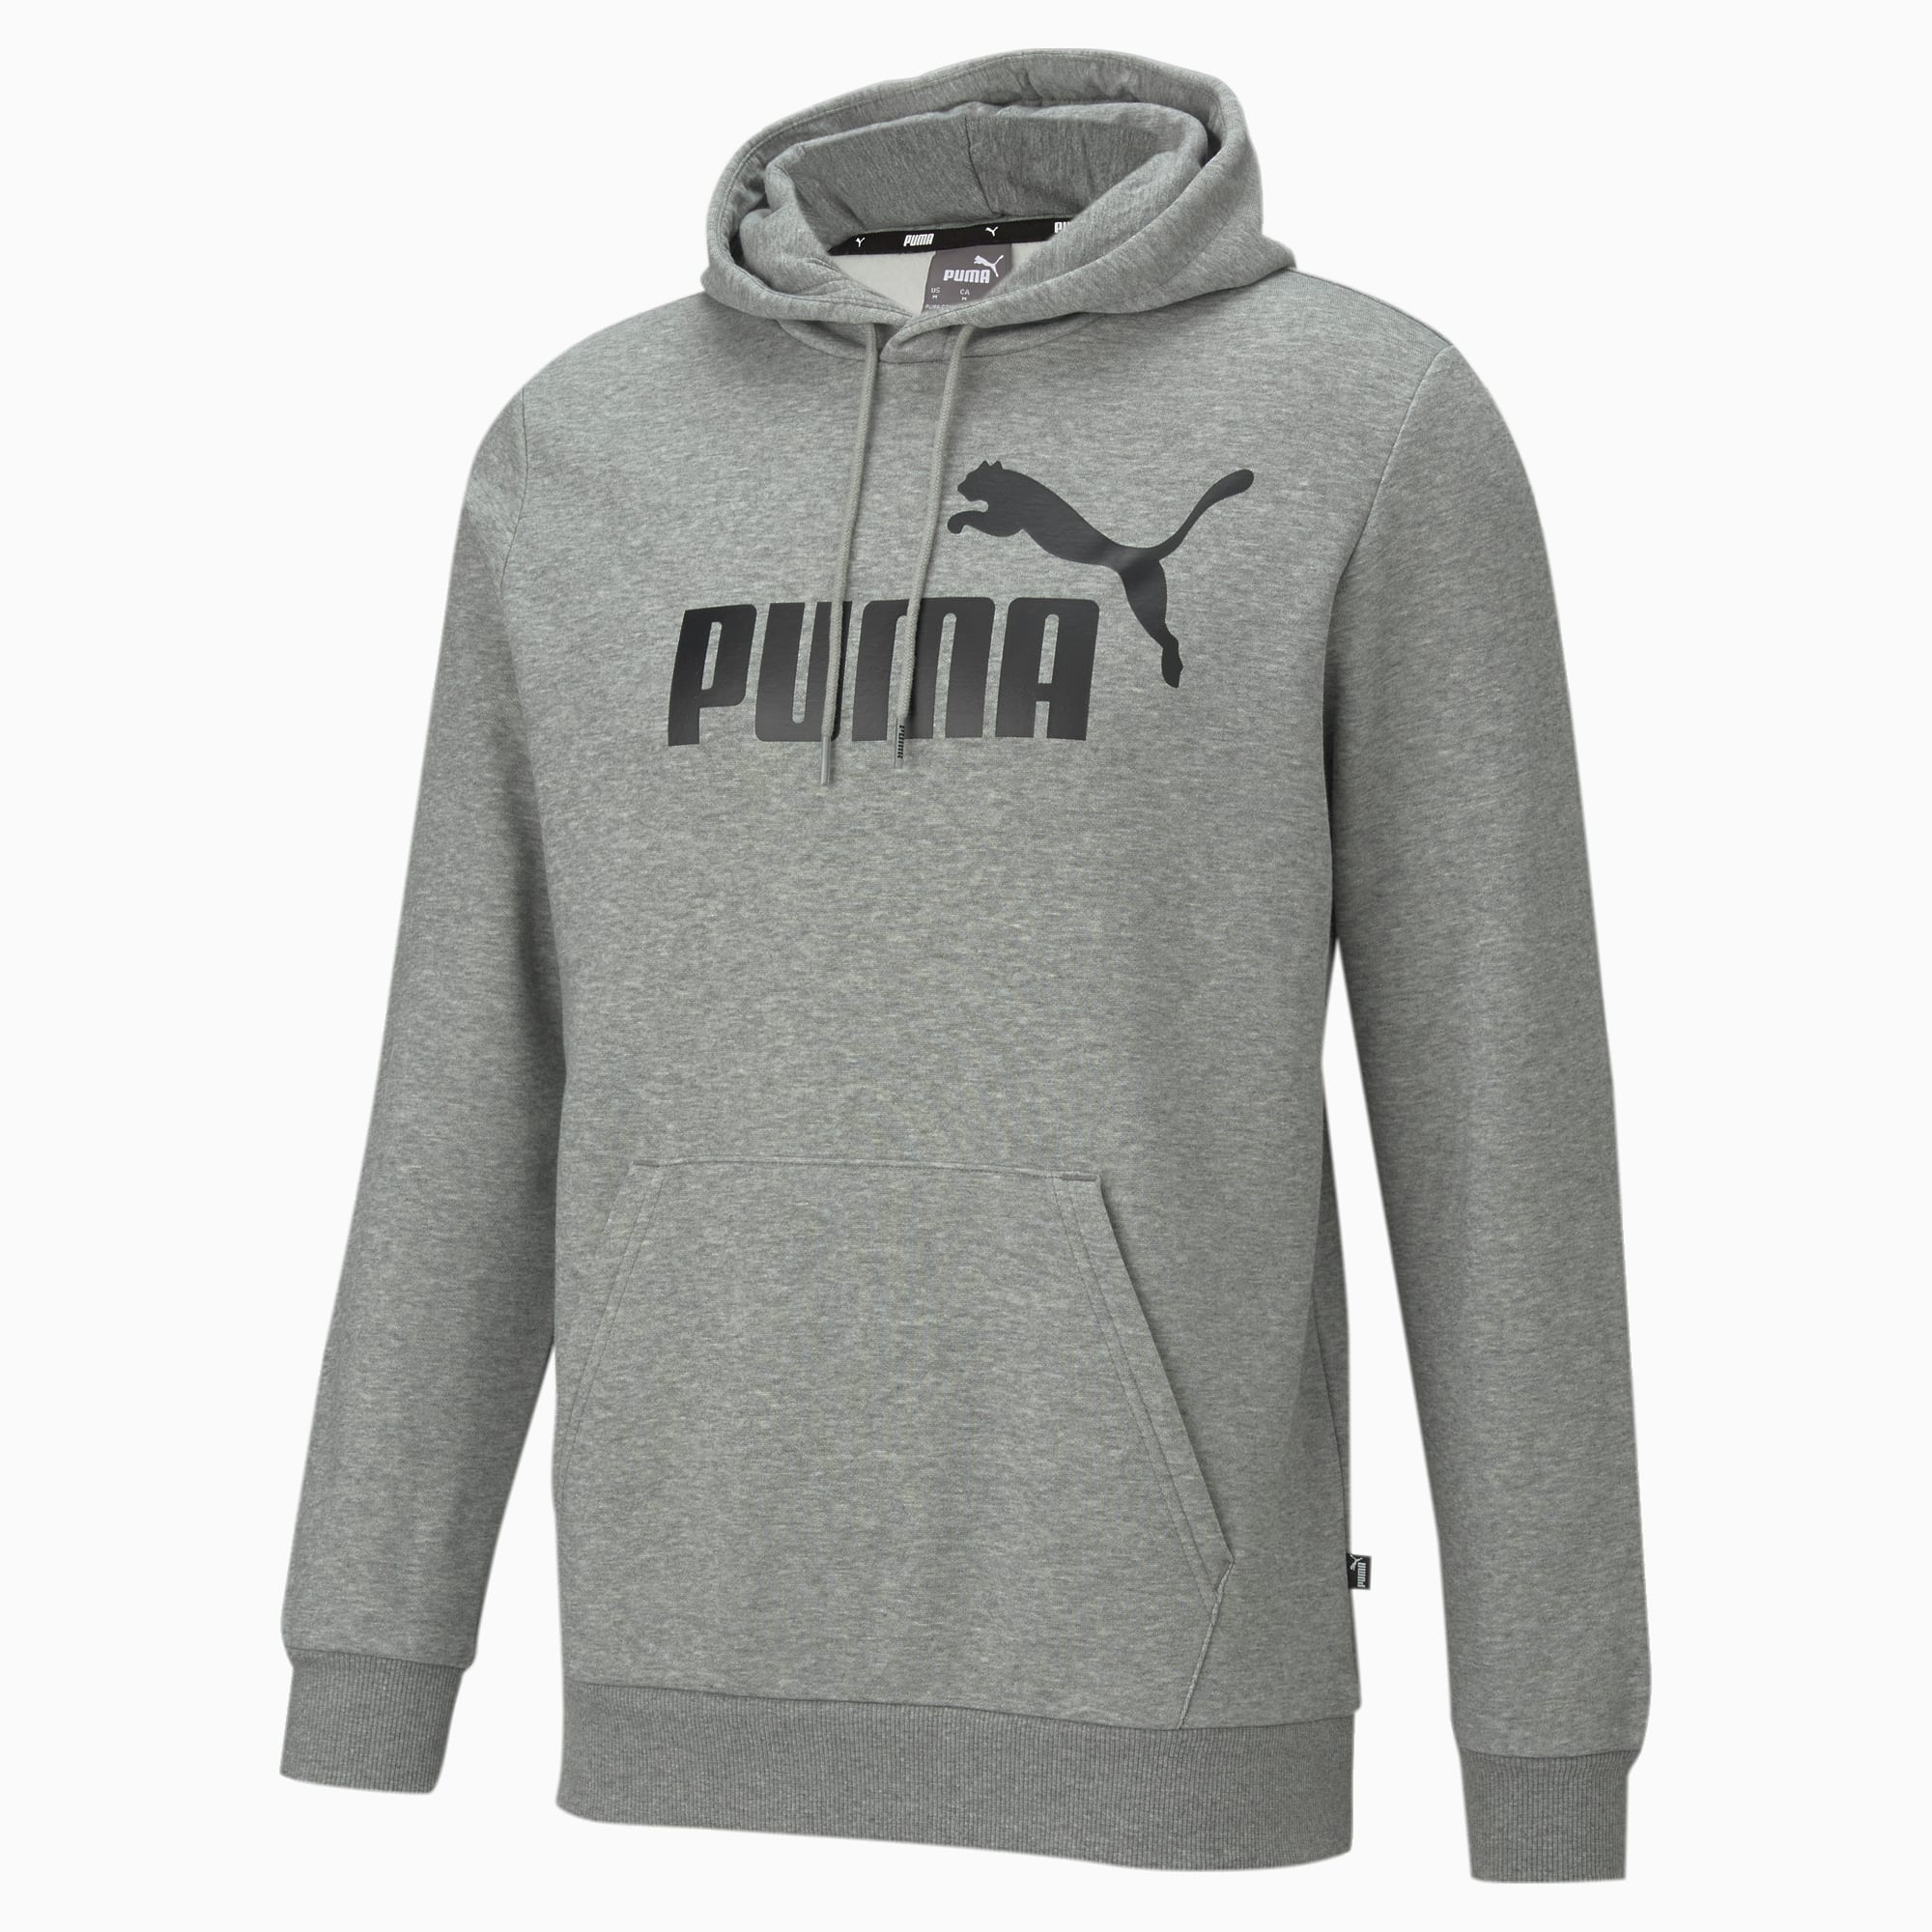 PUMA Essentials Big Logo Hoodie Men, Medium Grey Heather, Size 3XL, Clothing